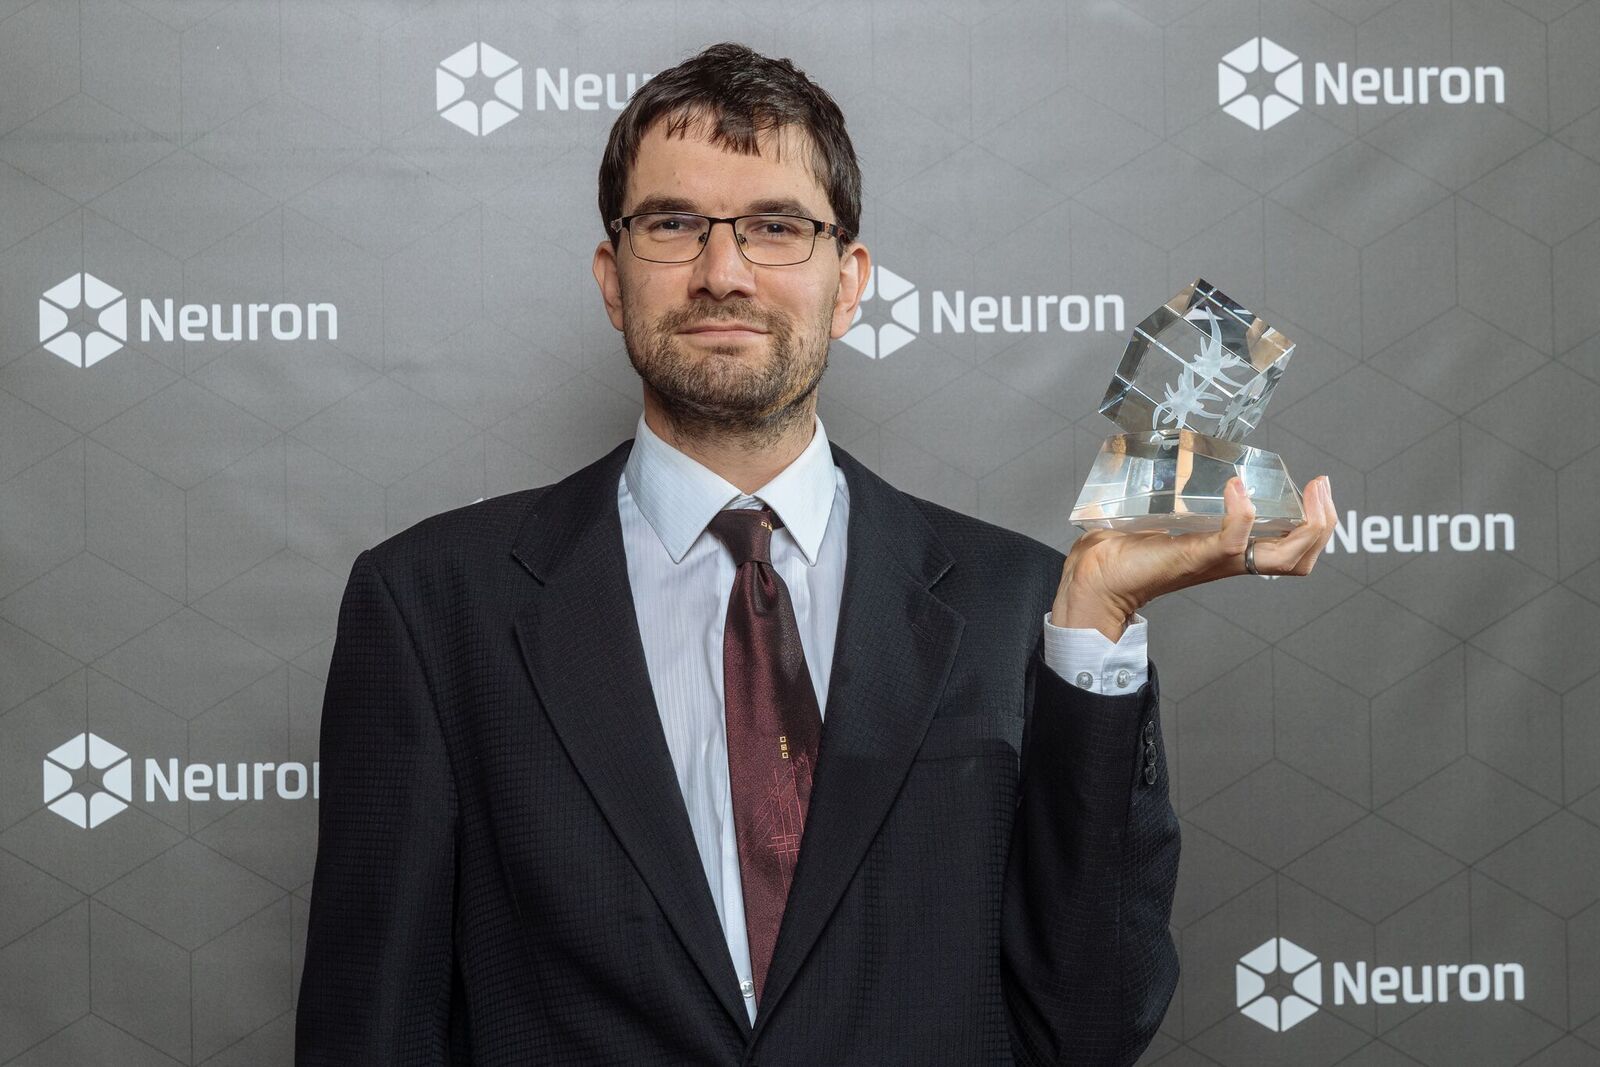 Ceny Neuron 2018 - biolog Filip Kolář